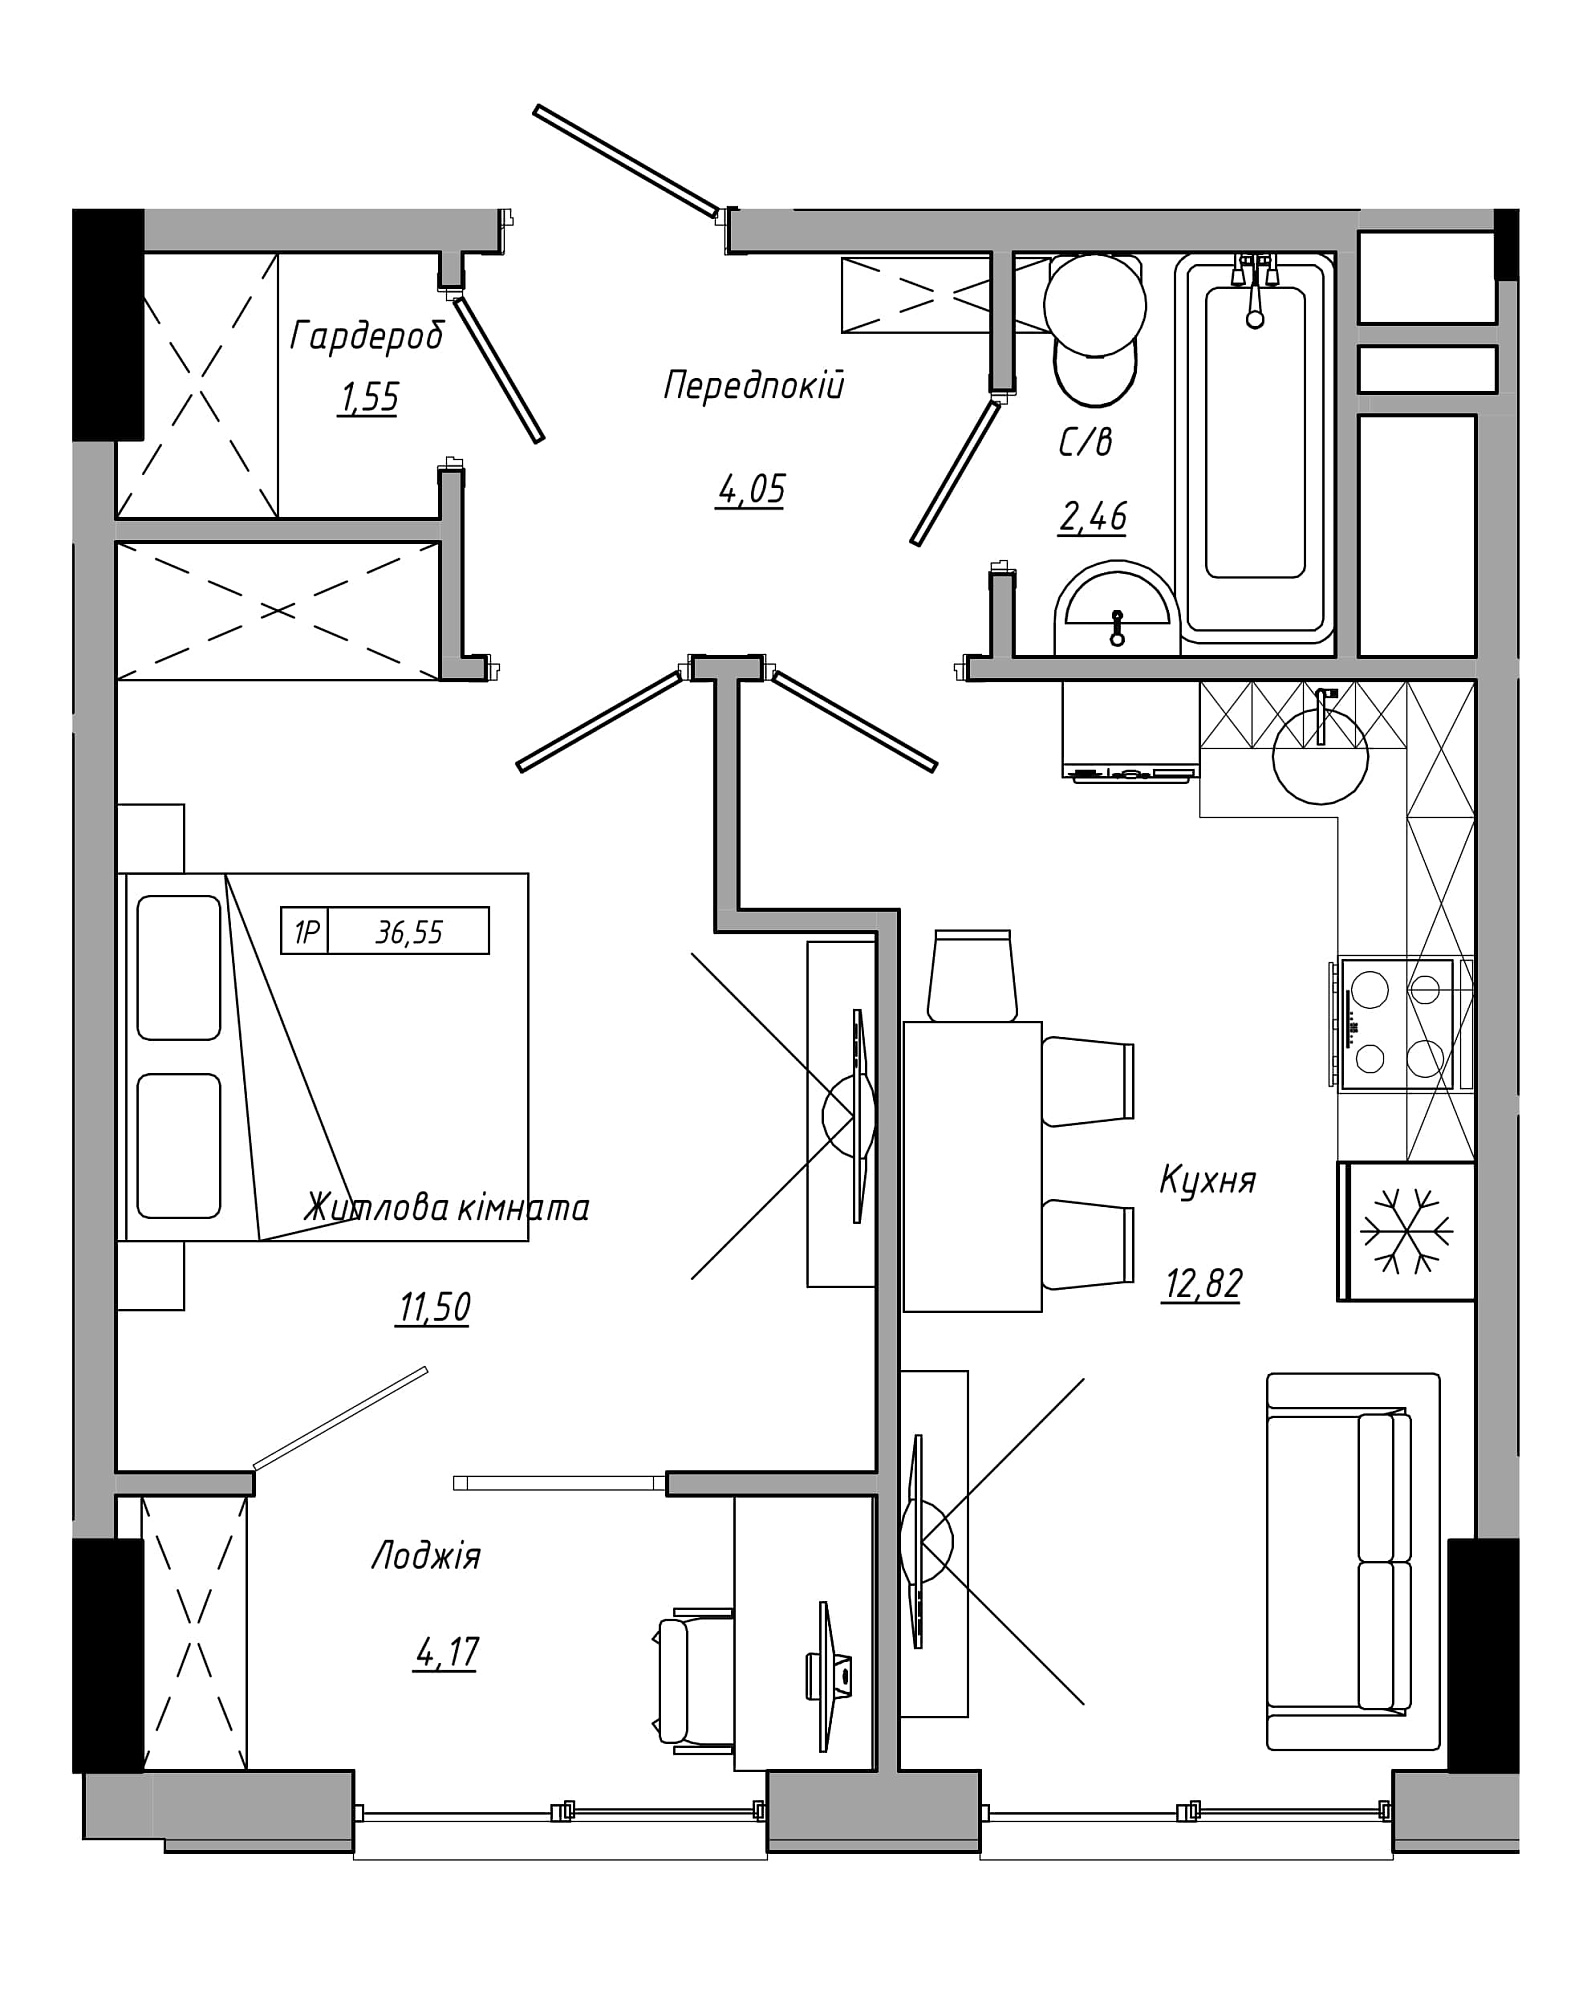 Планування 1-к квартира площею 36.55м2, AB-21-06/00020.